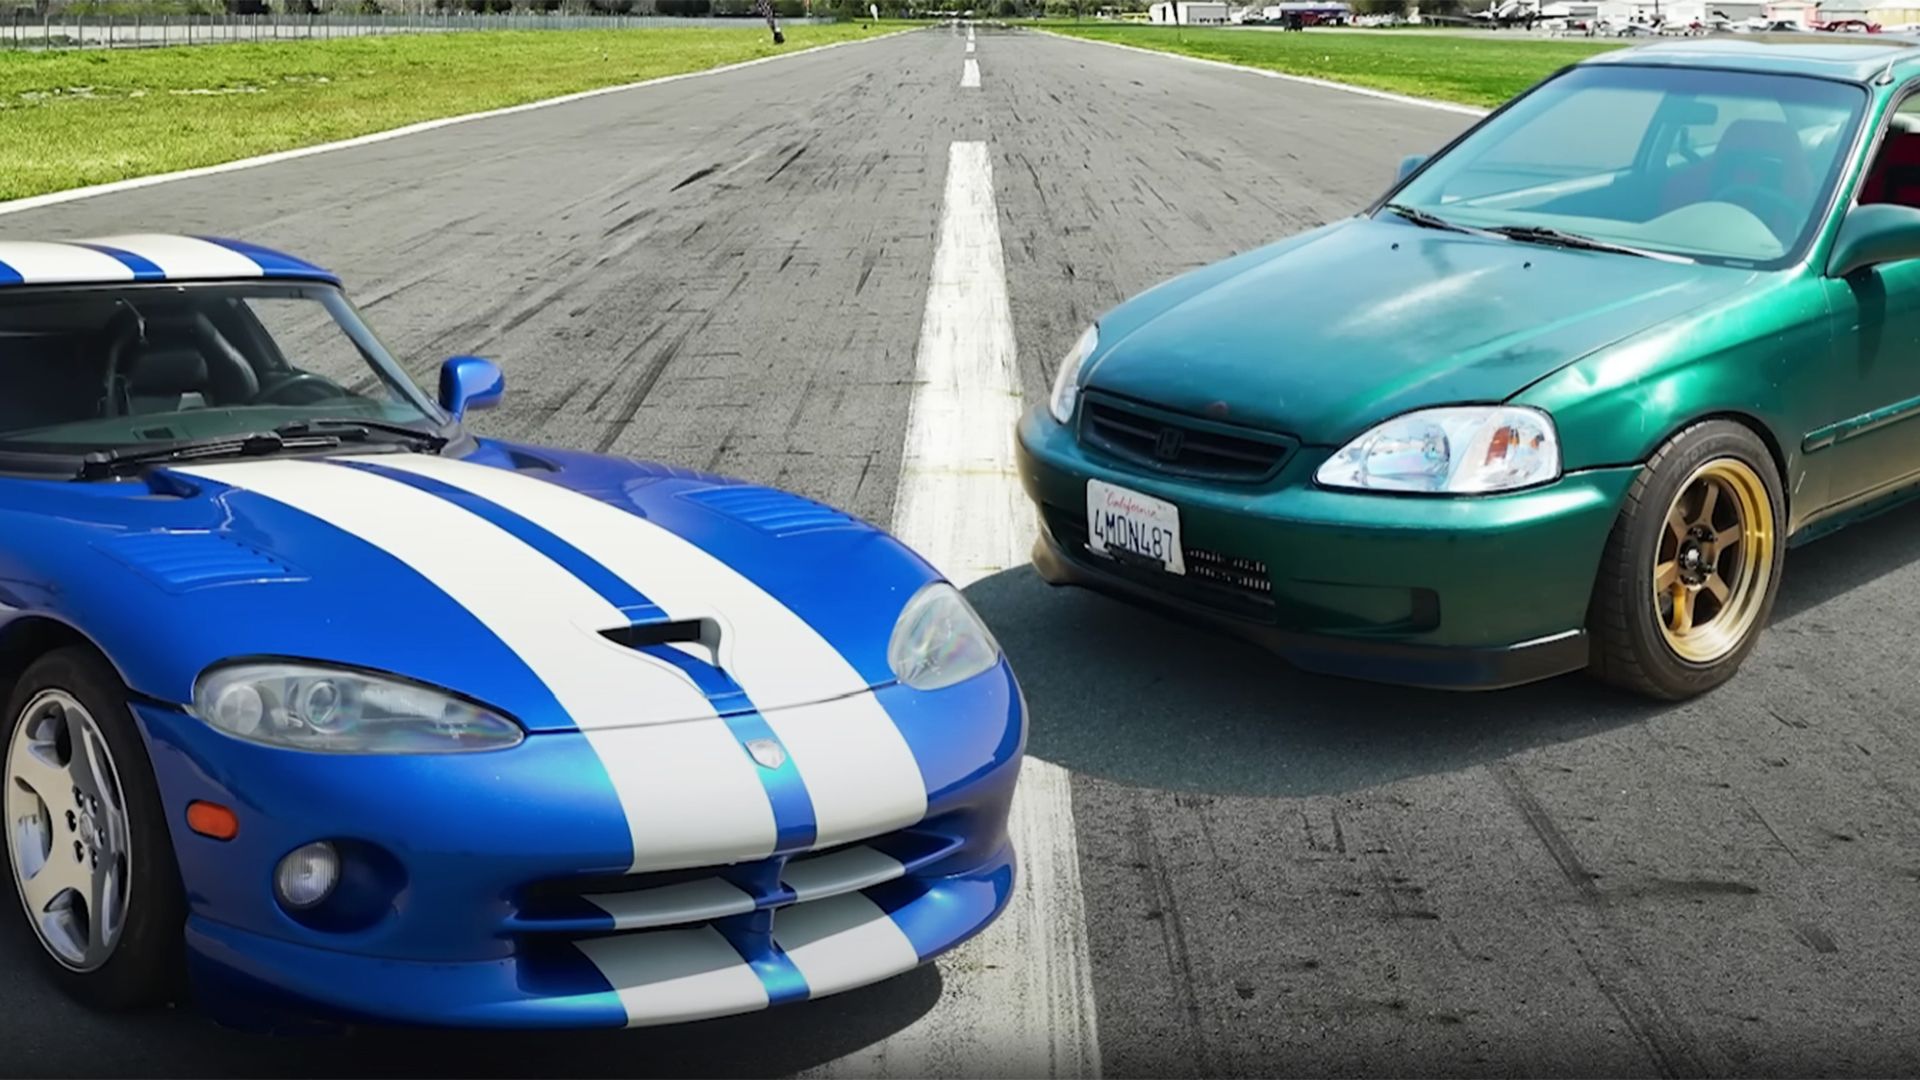 2002 Dodge Viper vs 2000 Honda Civic